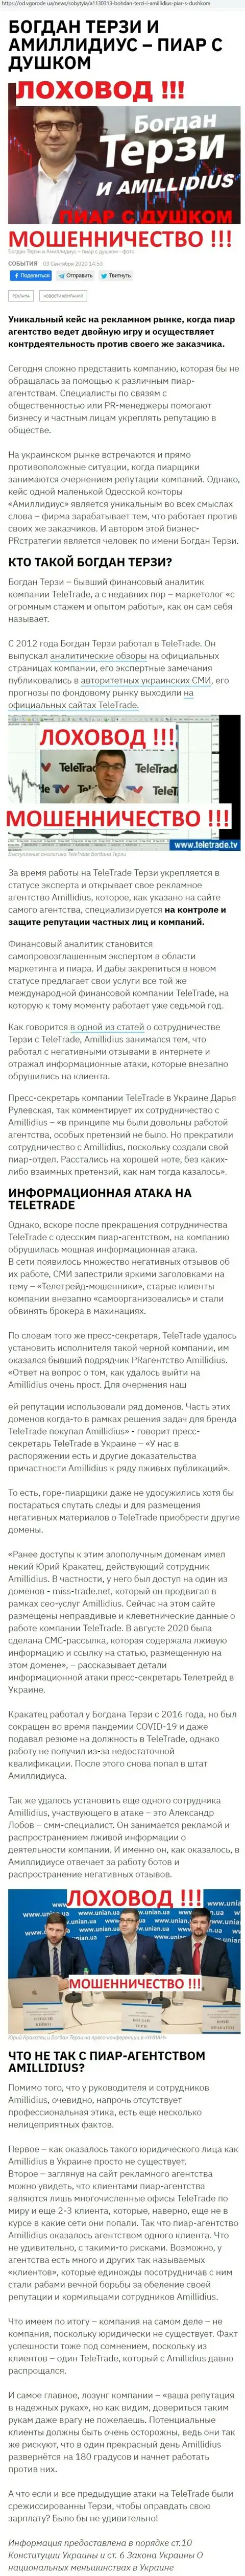 Богдан Терзи ненадежный партнер, информация со слов бывшего сотрудника конторы Амиллидиус Ком